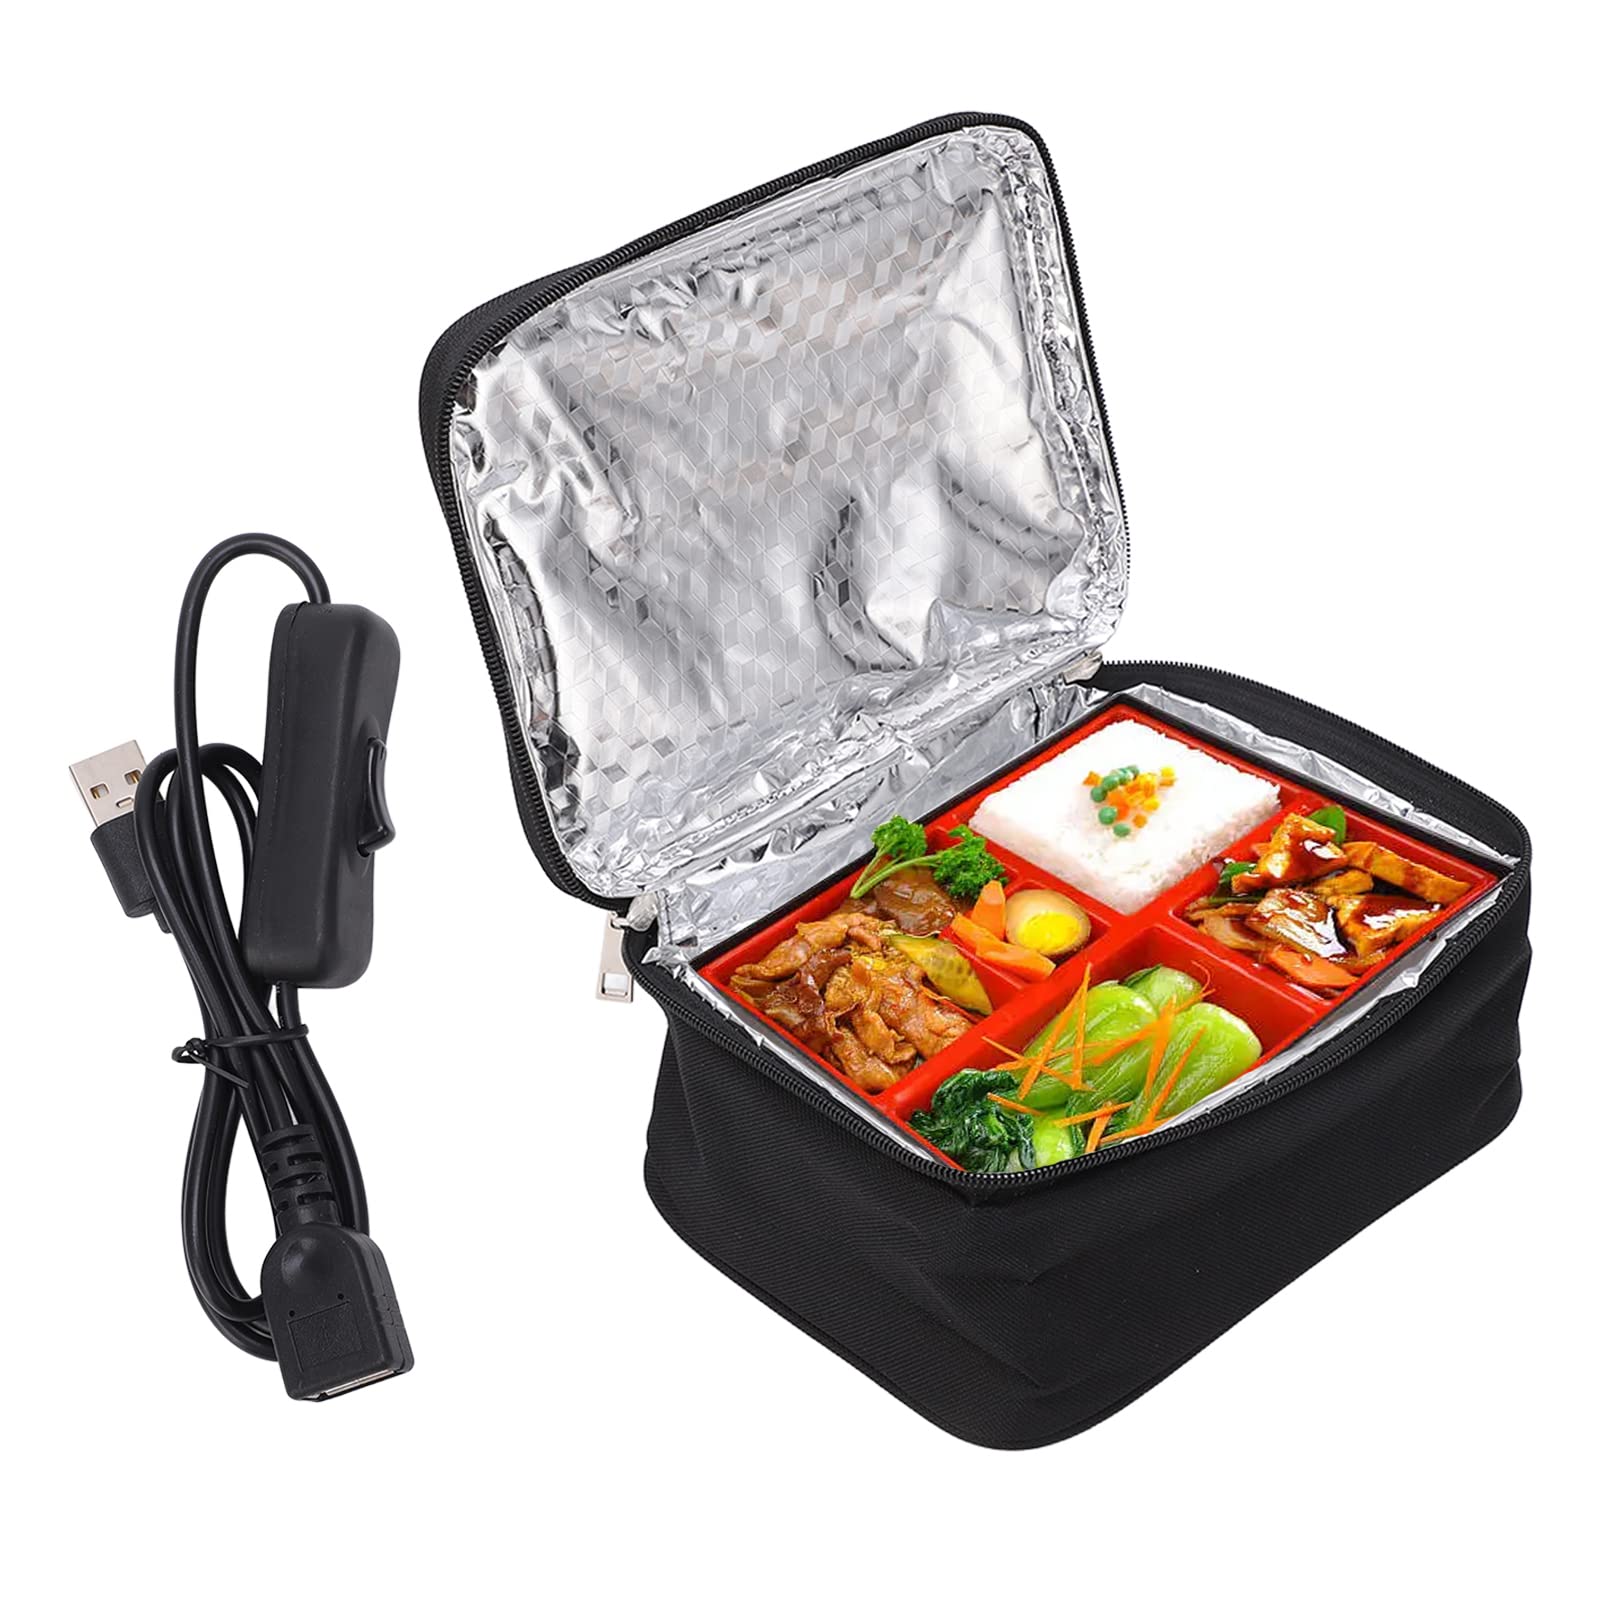 Shkalacar Elektrische Beheizte Lunchbox, 5V 9W Tragbarer Brotdose mit USB Schnittstelle, Aluminiumfolienfutter, Auslaufsicherer Lunchbox für Auto LKW Büro(Schwarz) von Shkalacar